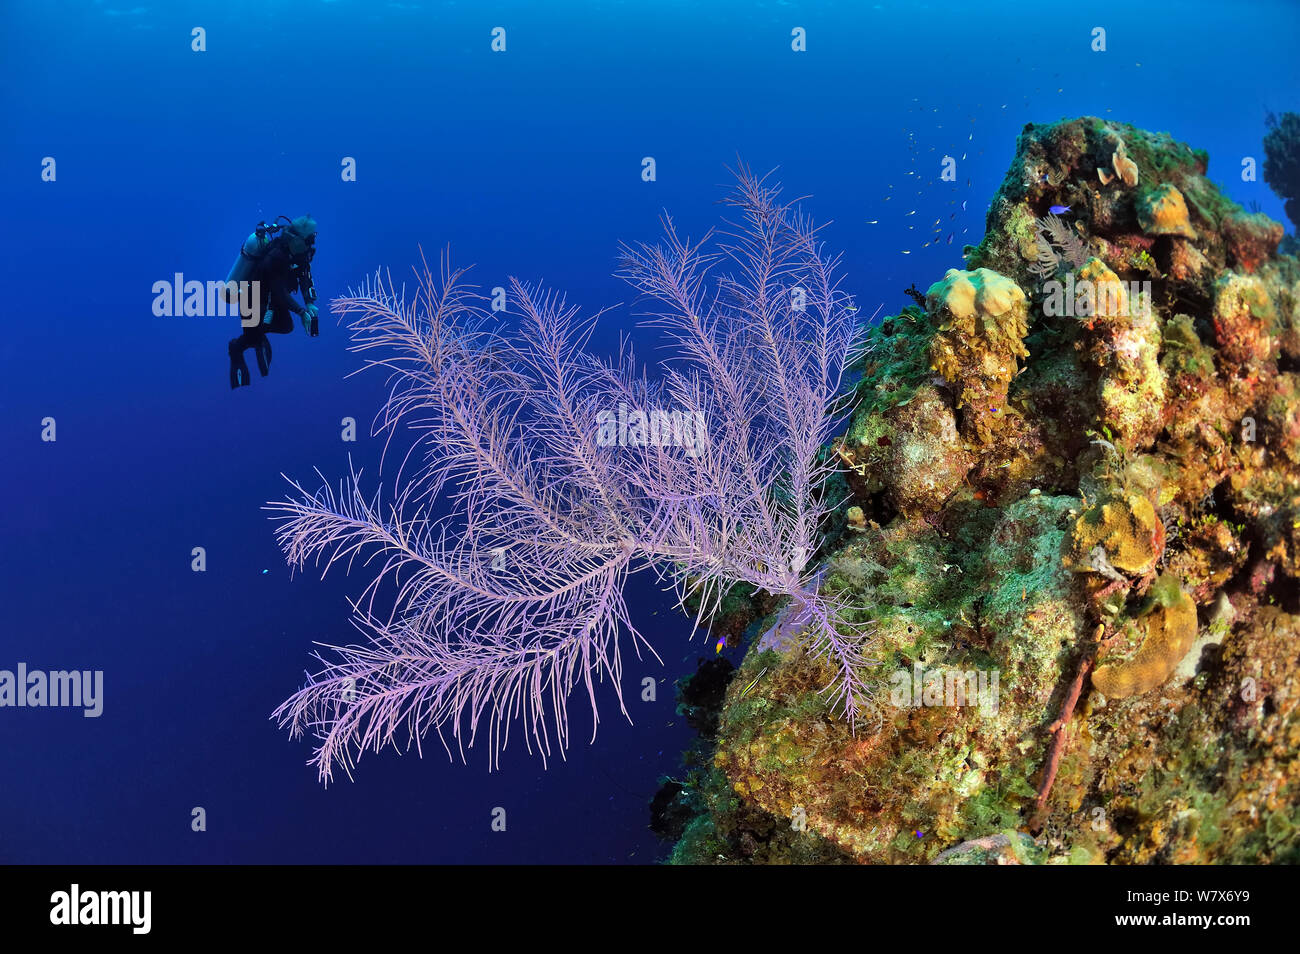 Buzo de coral cerca de la caída con un mar Bipinnate plume (Pseudopterogorgia bipinnata), la isla de San Salvador / Colombus Island, Bahamas. Caribe. De junio de 2013. Foto de stock